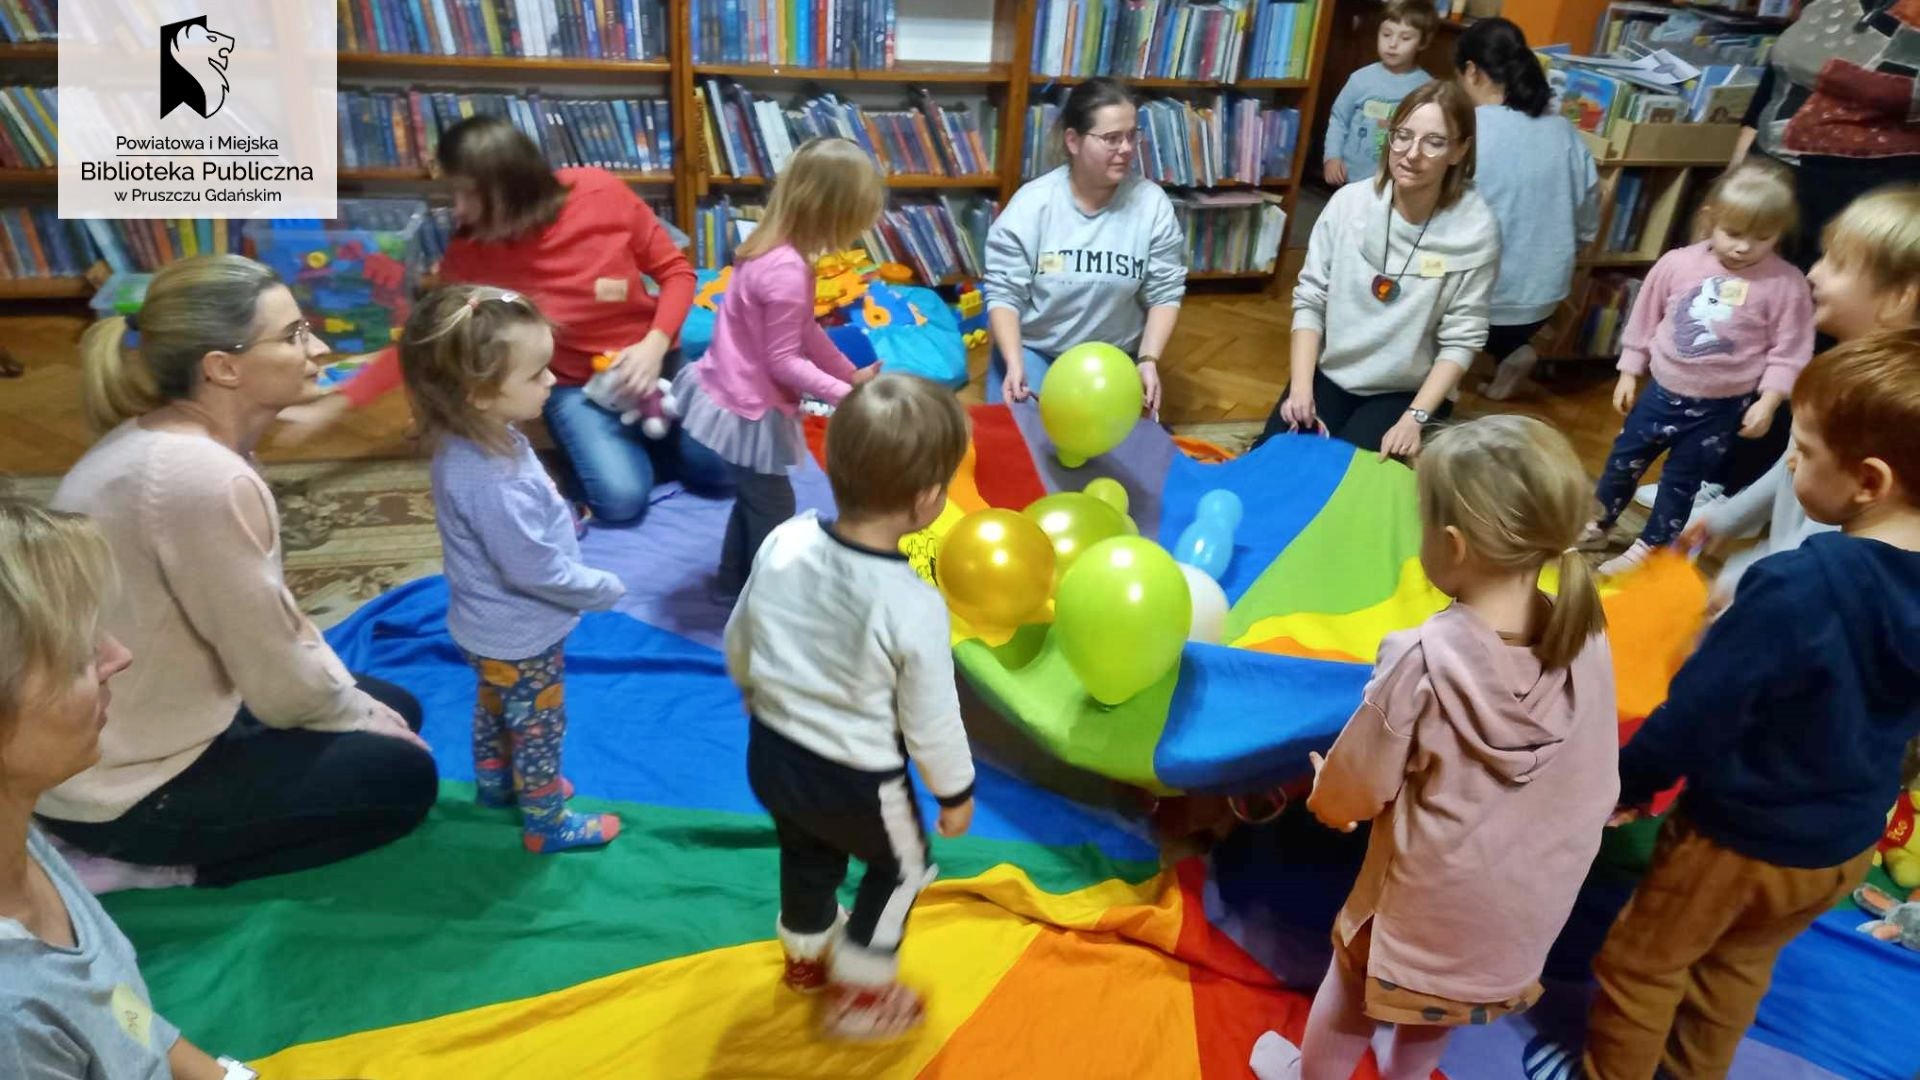 Na dywanie rozłożona kolorowa chusta Klanzy. Na środku chusty leżą kolorowe balony: żółte, zielone, białe, niebieskie, niebieskie. Obok balonów stoją małe dzieci. Kilkoro dorosłych trzyma chustę za rogi, a niektórzy na niej siedzą.